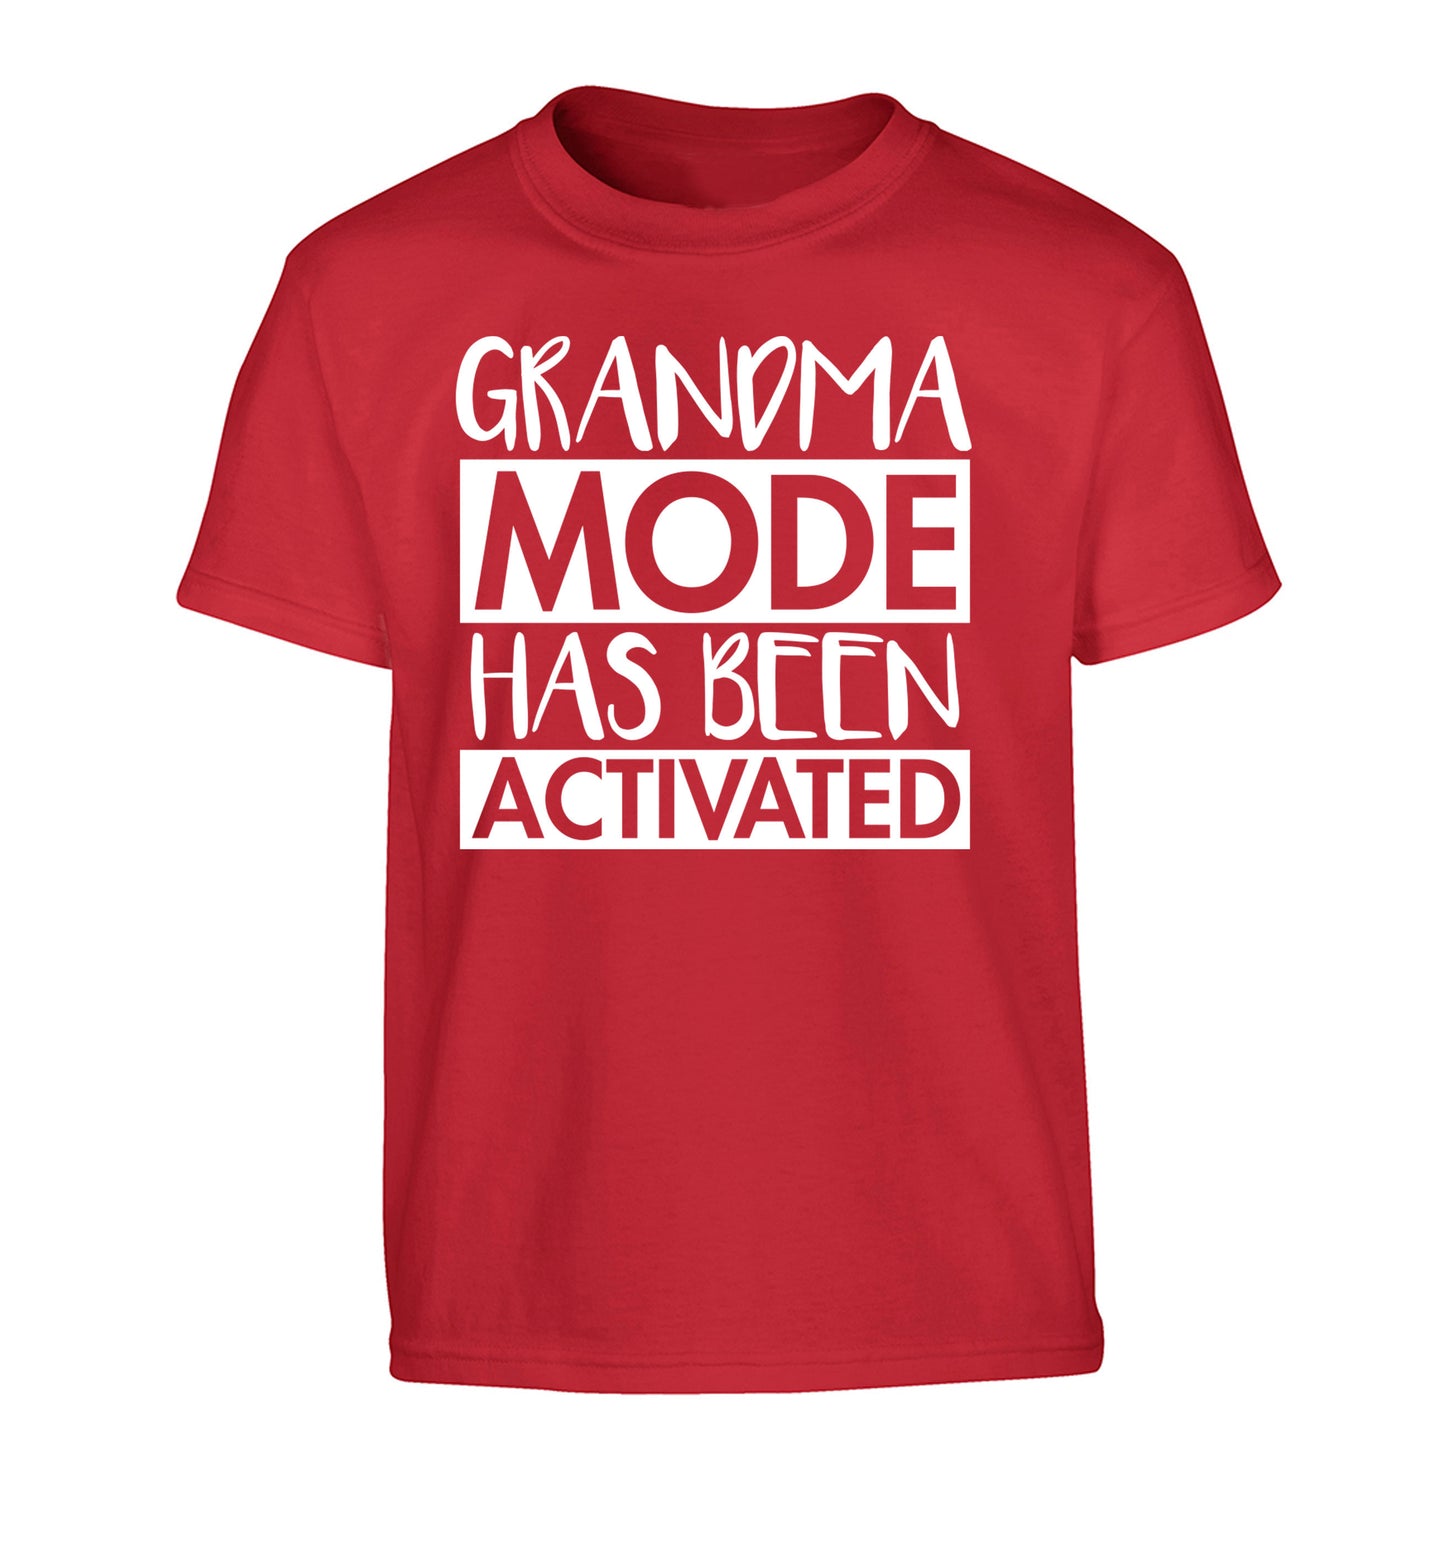 Grandma mode activated Children's red Tshirt 12-14 Years